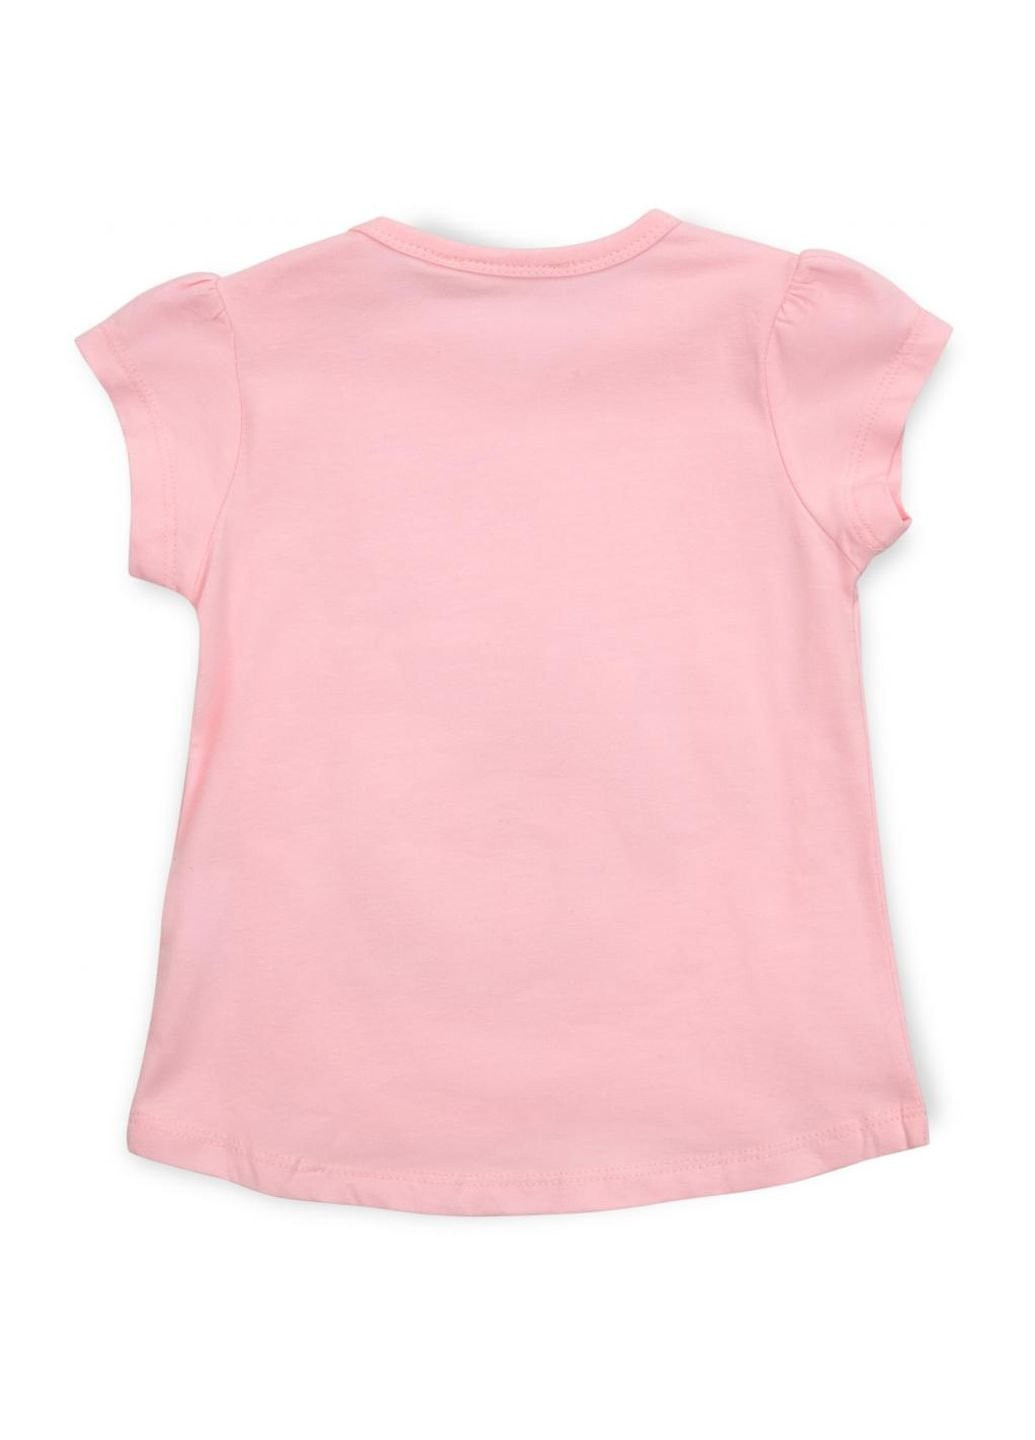 Світло-сірий літній набір дитячого одягу зі слоником (13376-98g-pink) Breeze